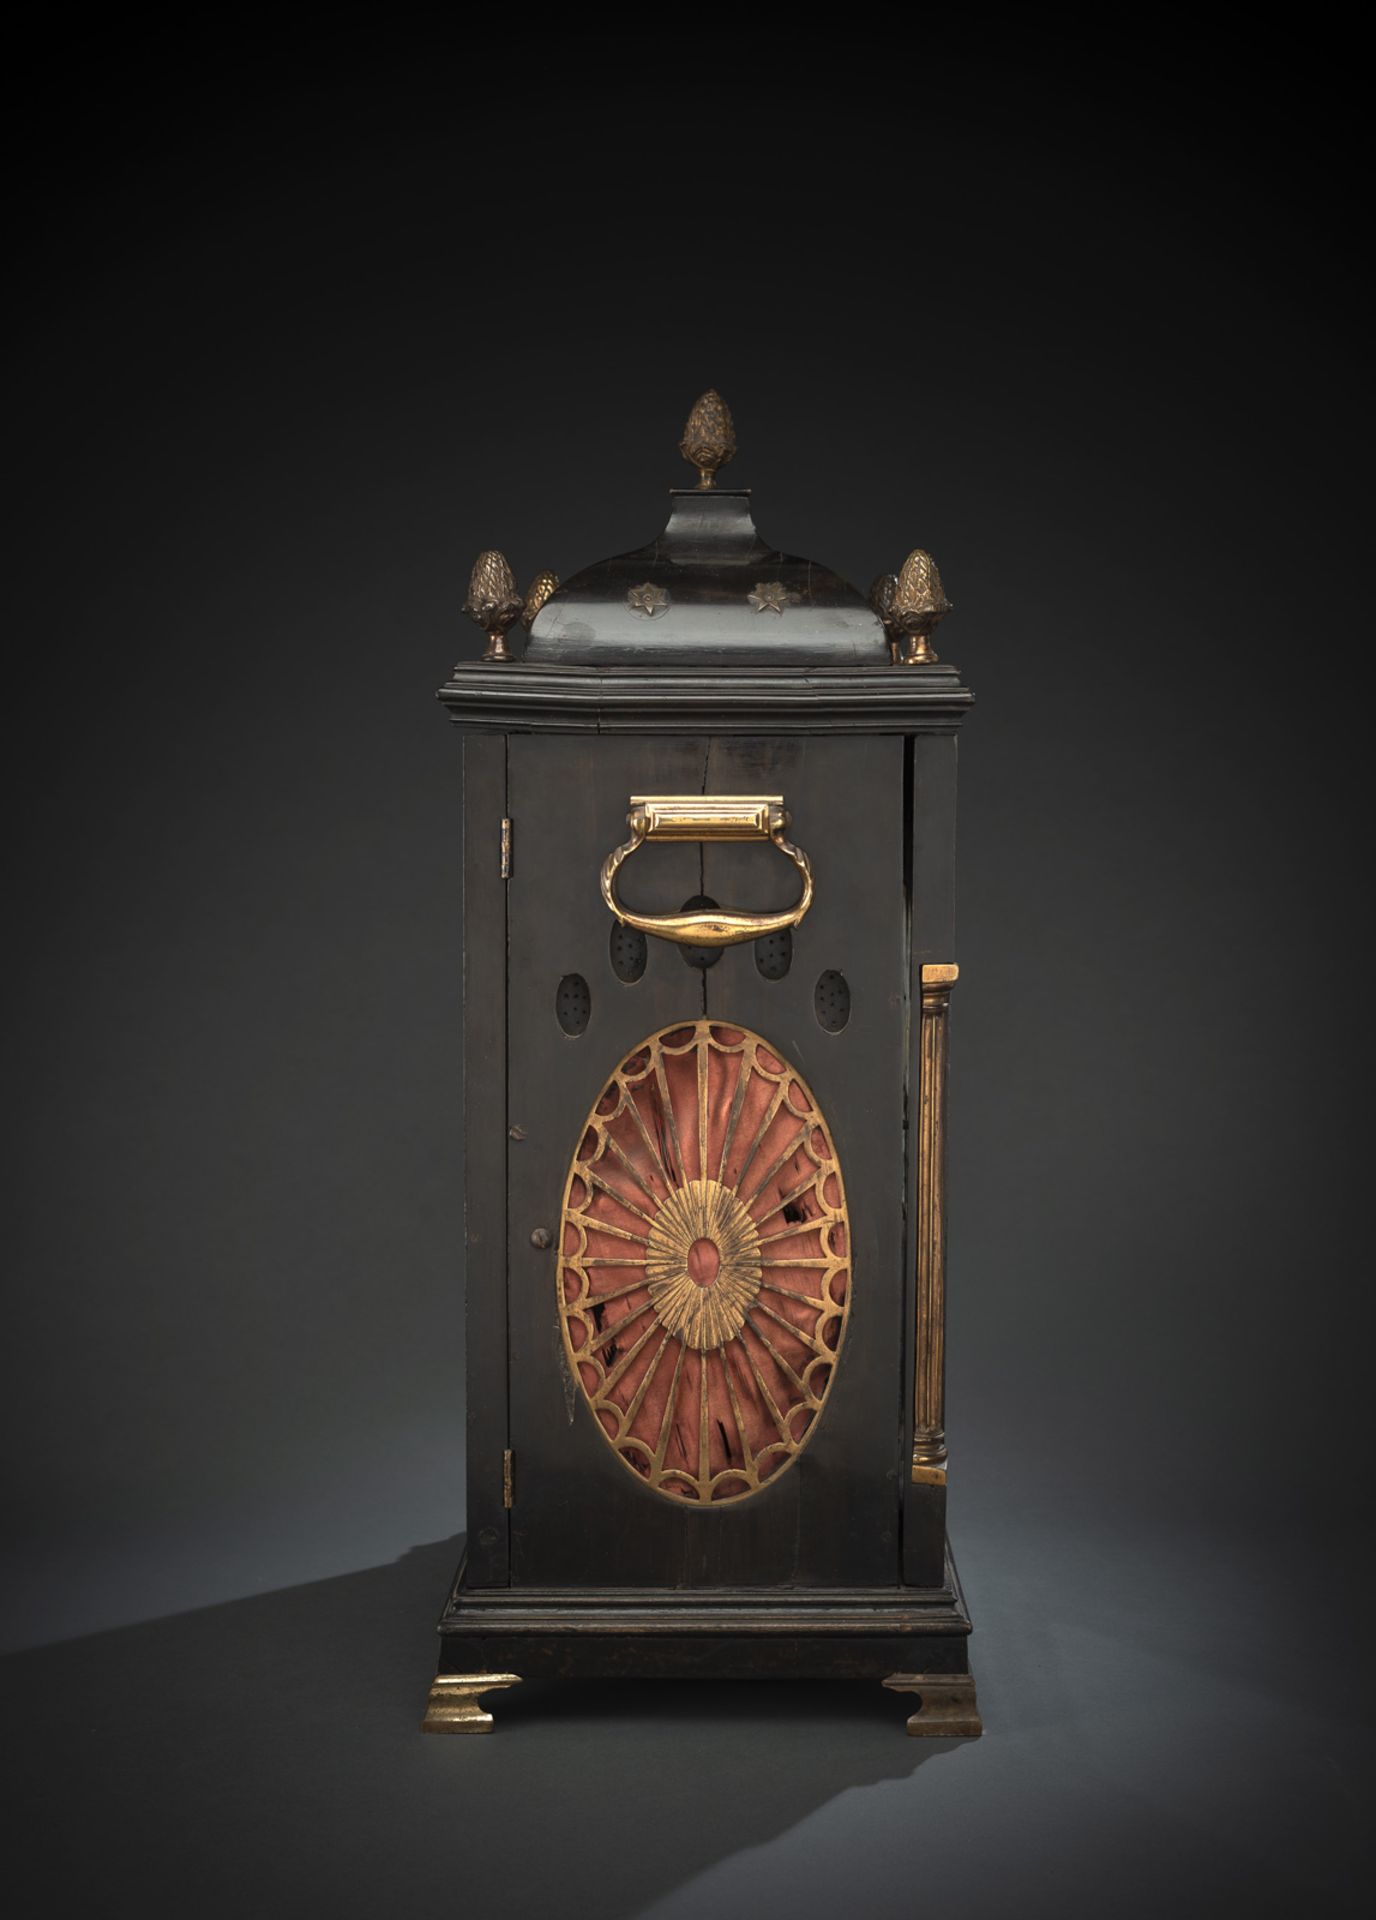 Außergewöhnliche Bracket Clock mit Carillon und Viertelstundenschlag - Bild 6 aus 6